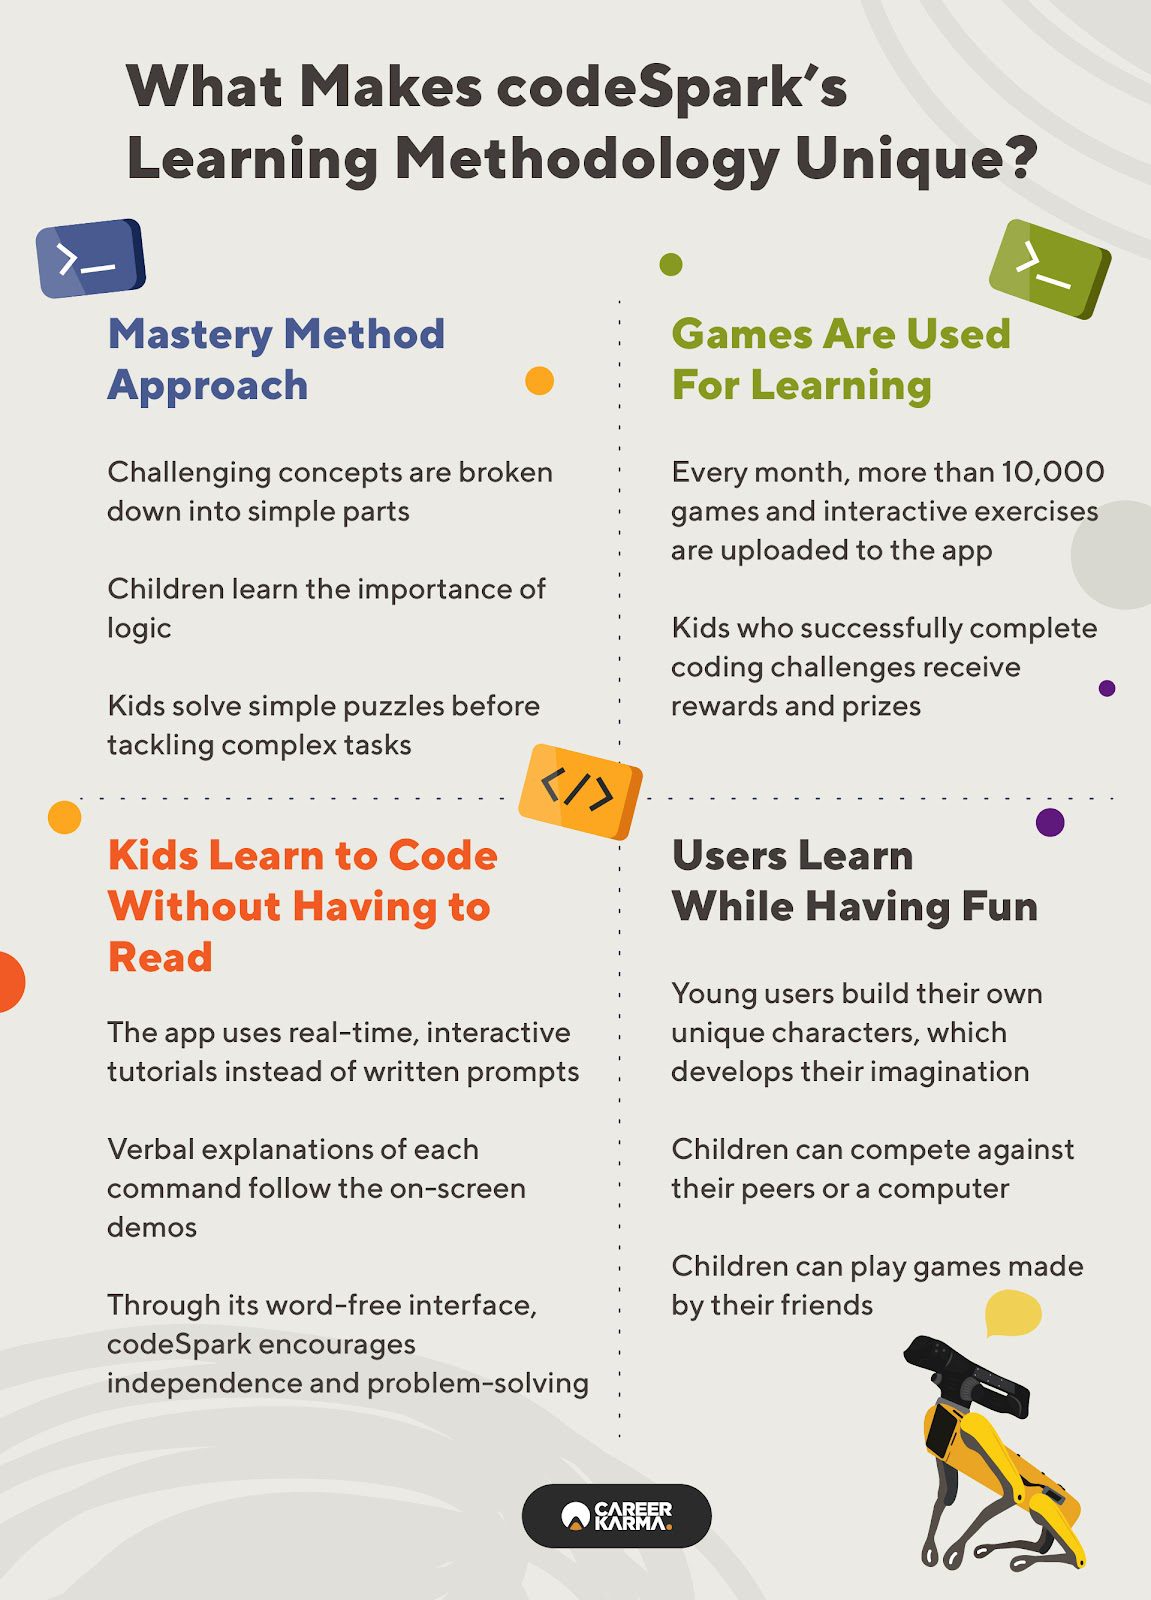 An infographic explaining codeSpark’s learning methodology